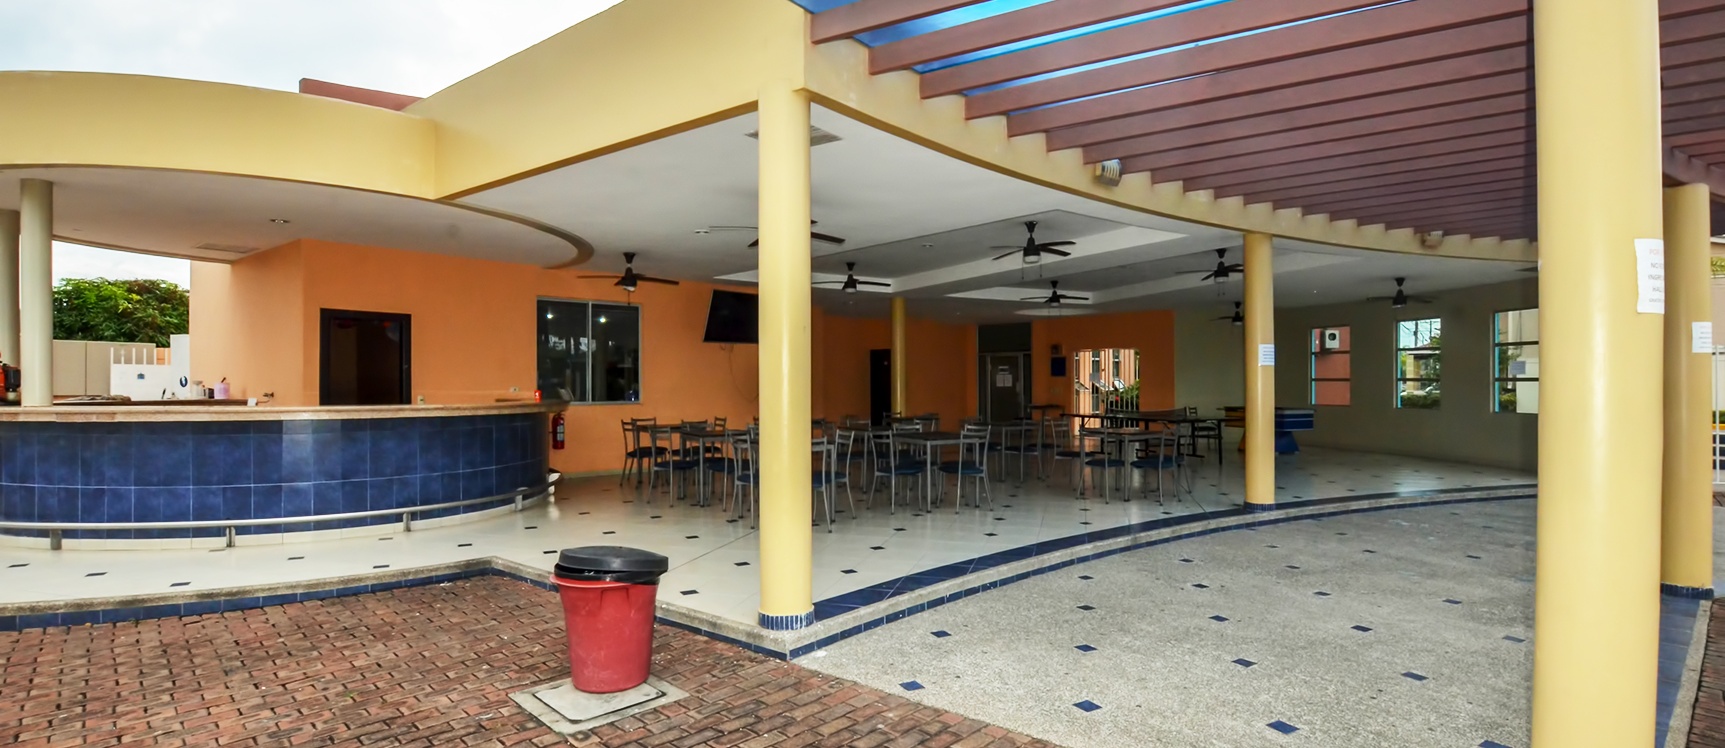 GeoBienes - Departamento en alquiler en la Urbanización Volare, Vía Samborondón - Plusvalia Guayaquil Casas de venta y alquiler Inmobiliaria Ecuador